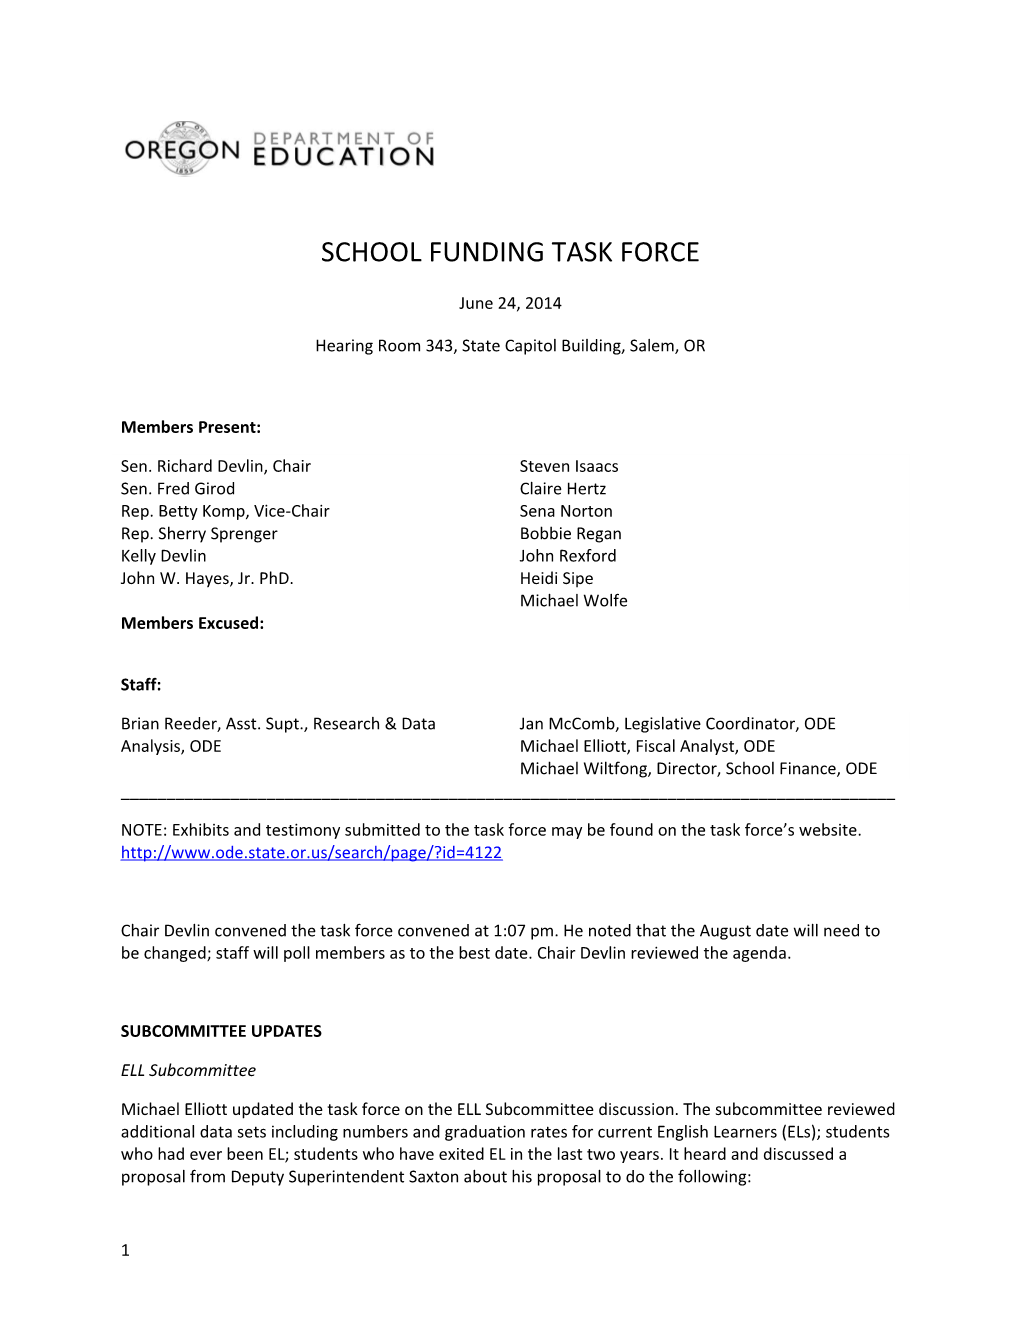 School Funding Task Force